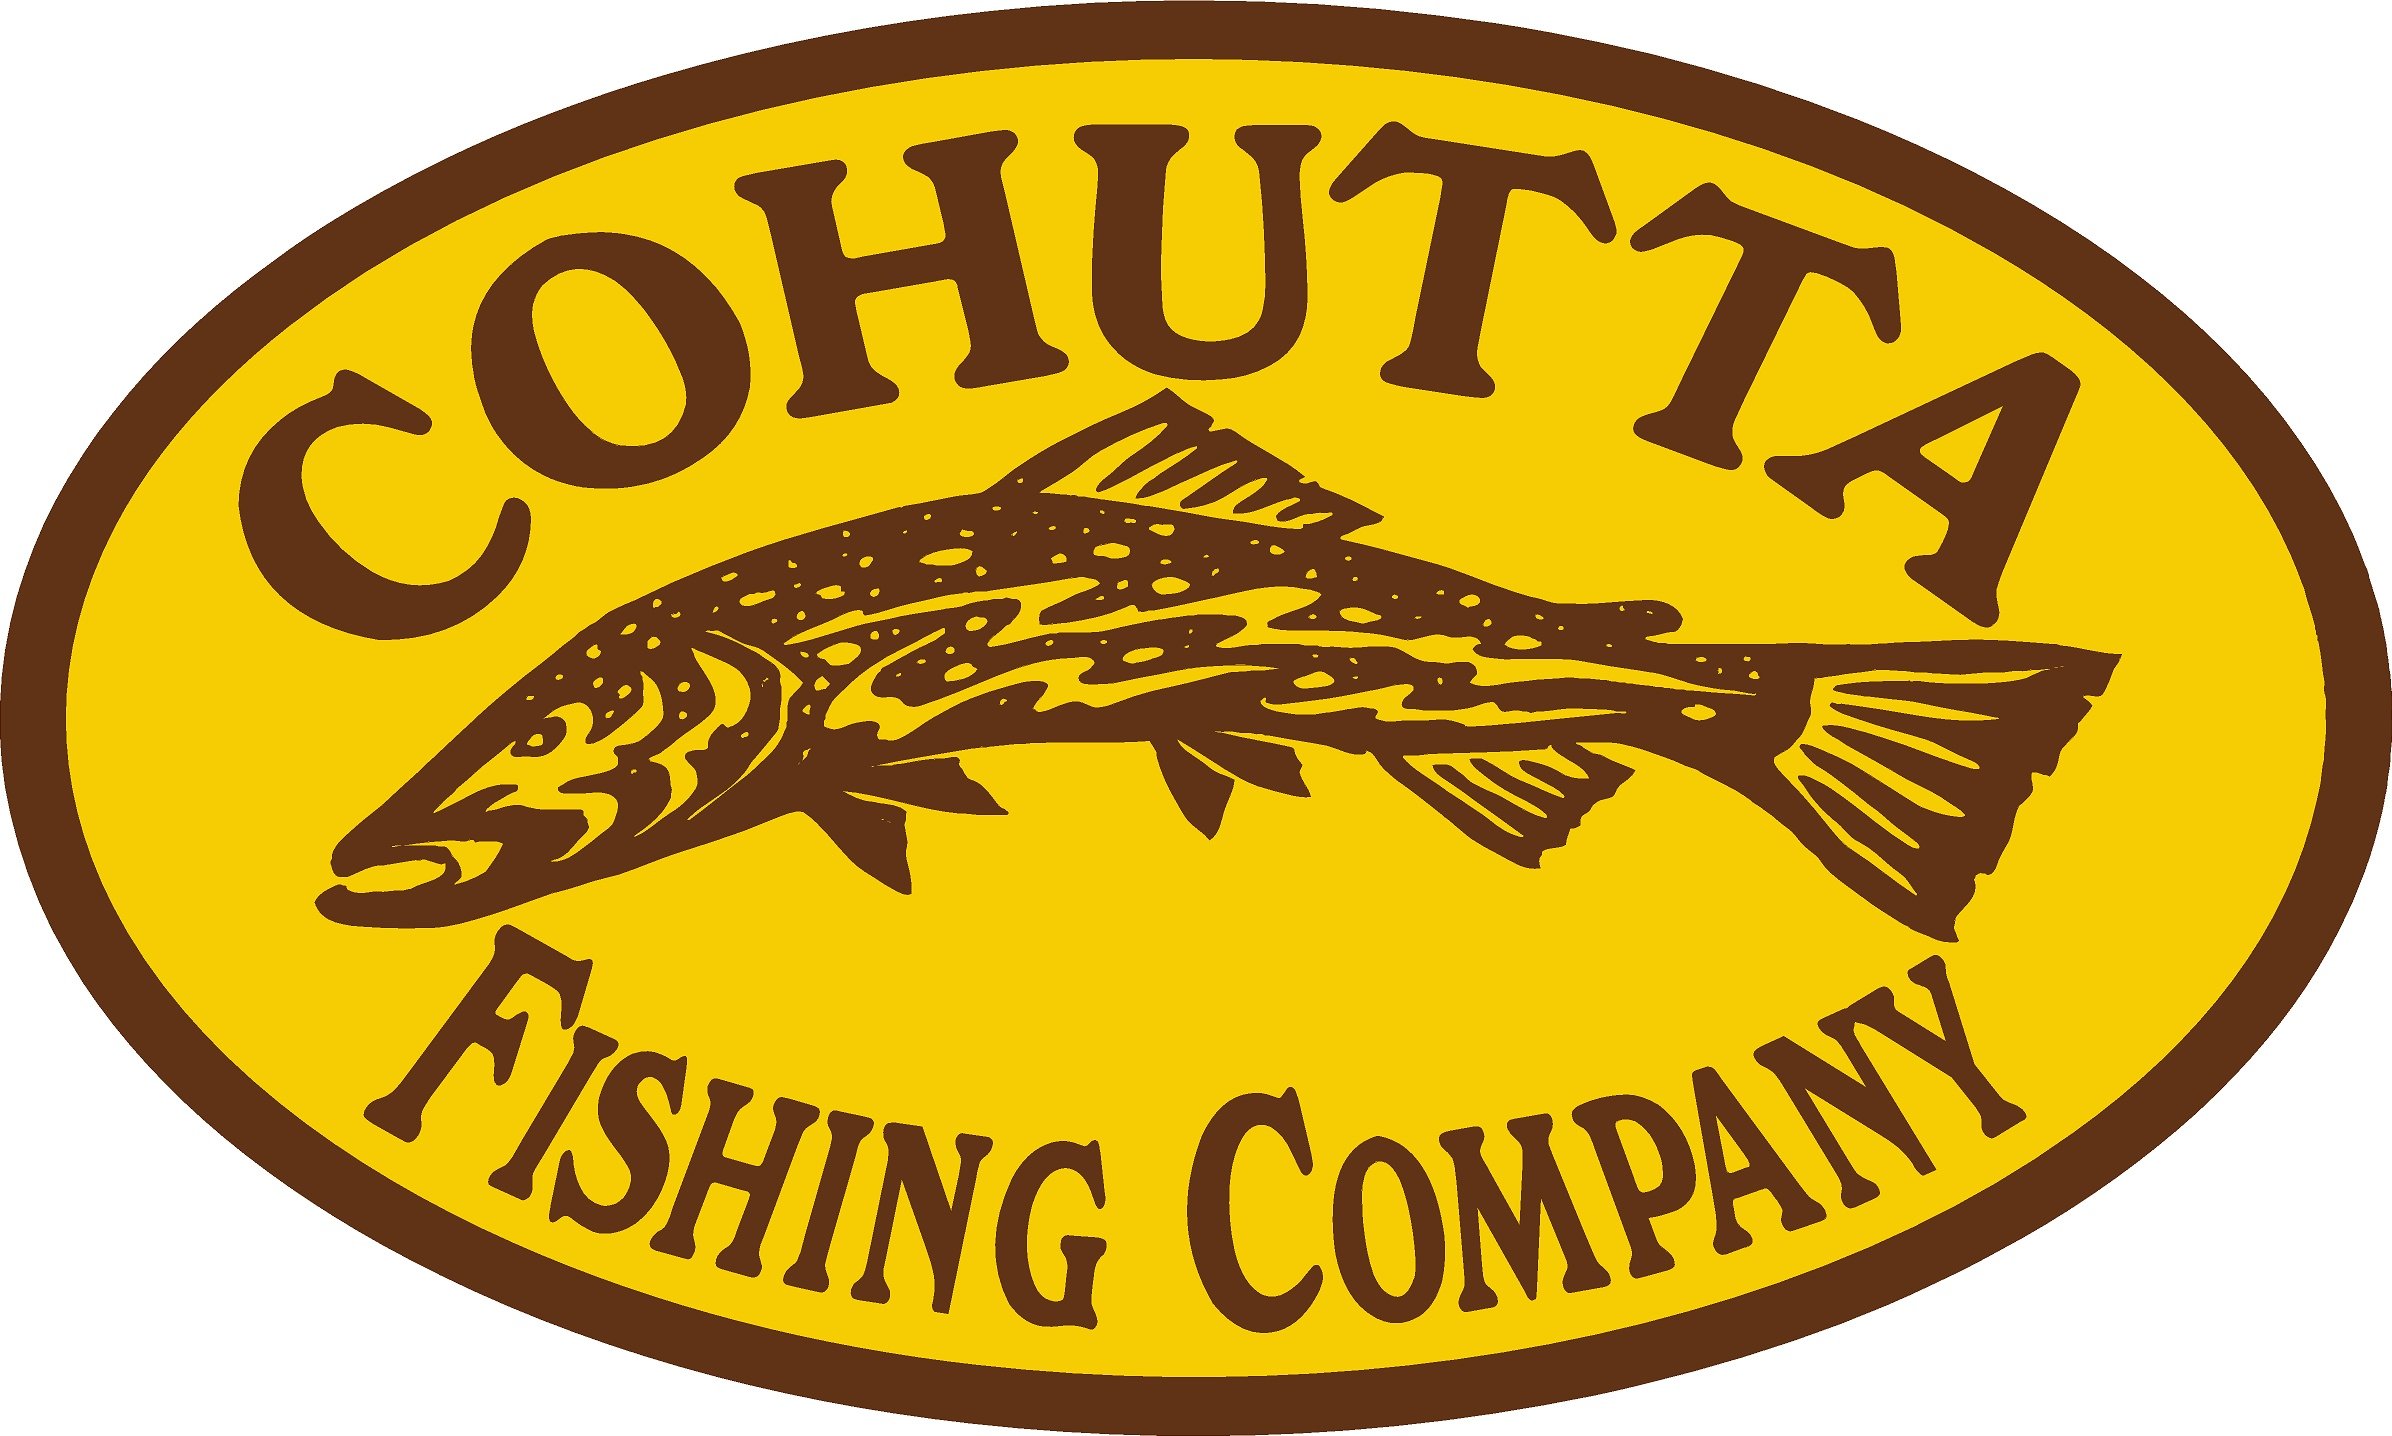 Cohutta Logo.jpg